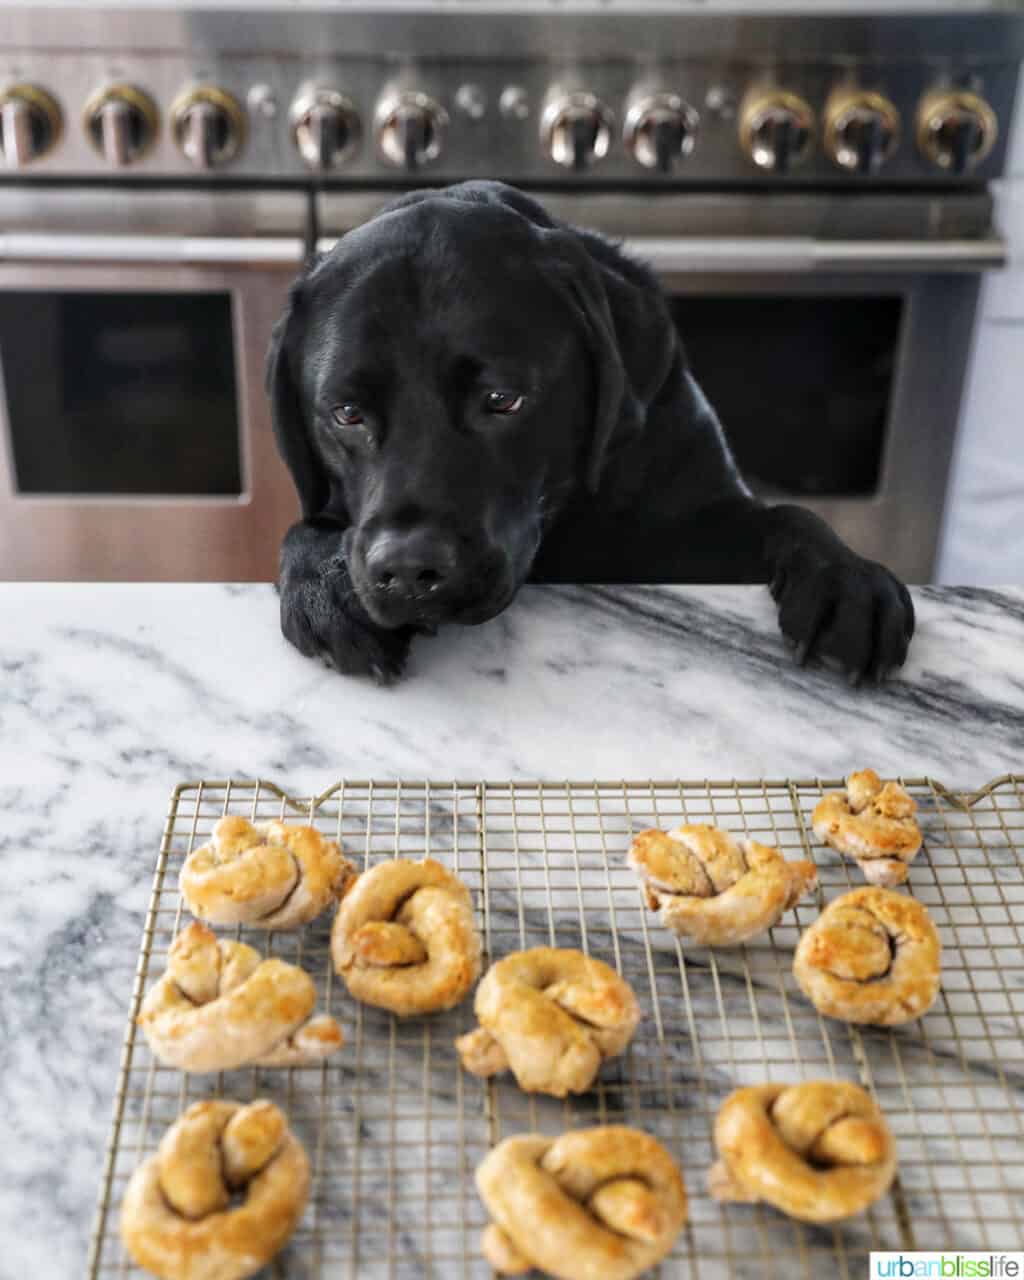 Ace staring at dog pretzels